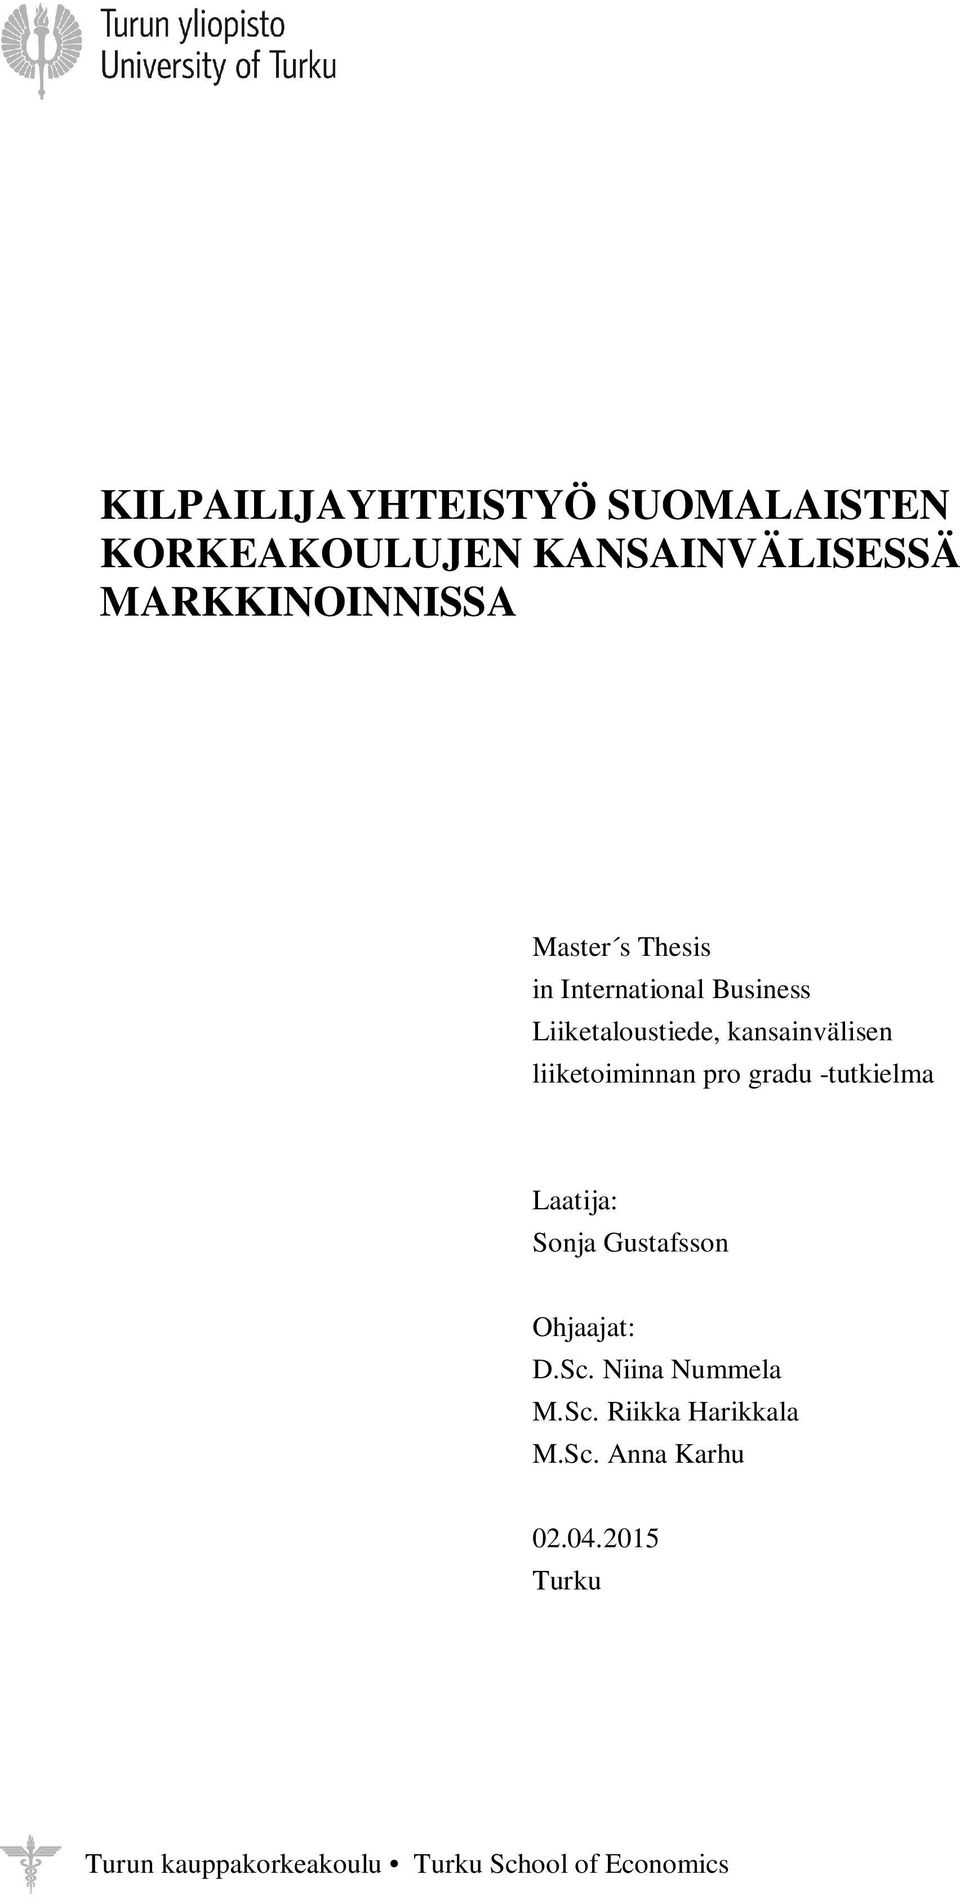 gradu -tutkielma Laatija: Sonja Gustafsson Ohjaajat: D.Sc. Niina Nummela M.Sc. Riikka Harikkala M.